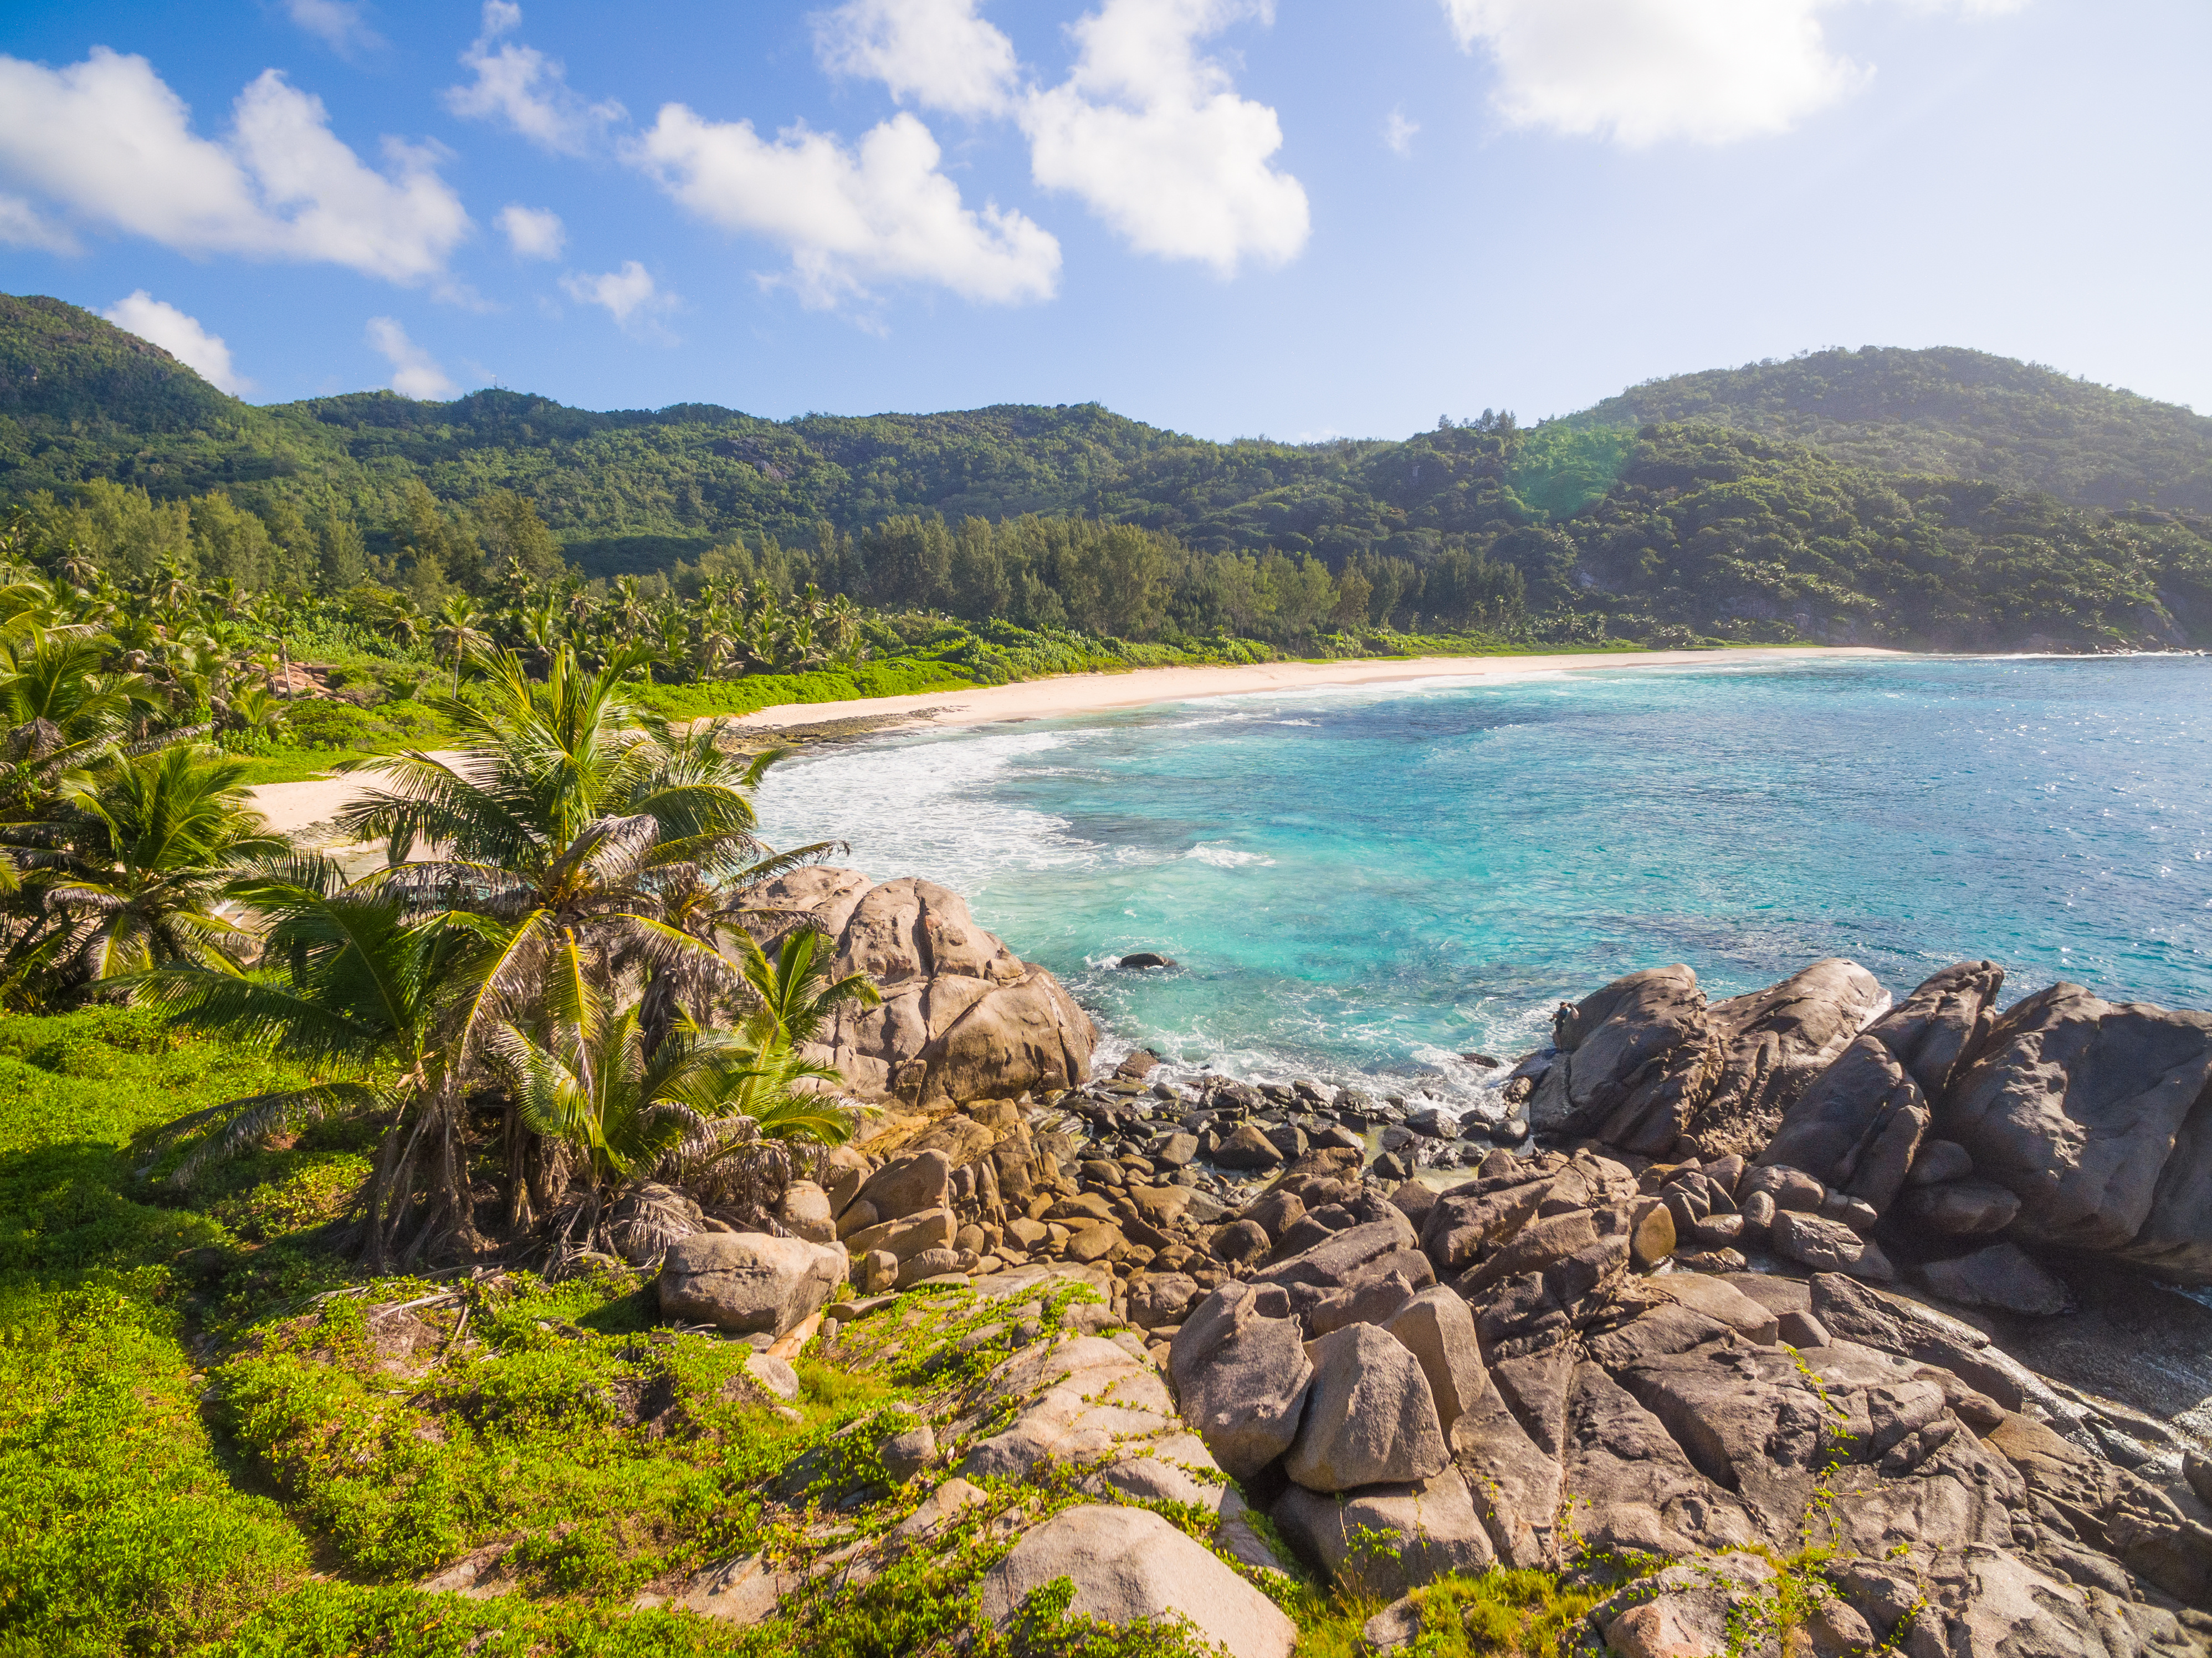 Découverte de l’île de Mahé et de ses plages paradisiaques